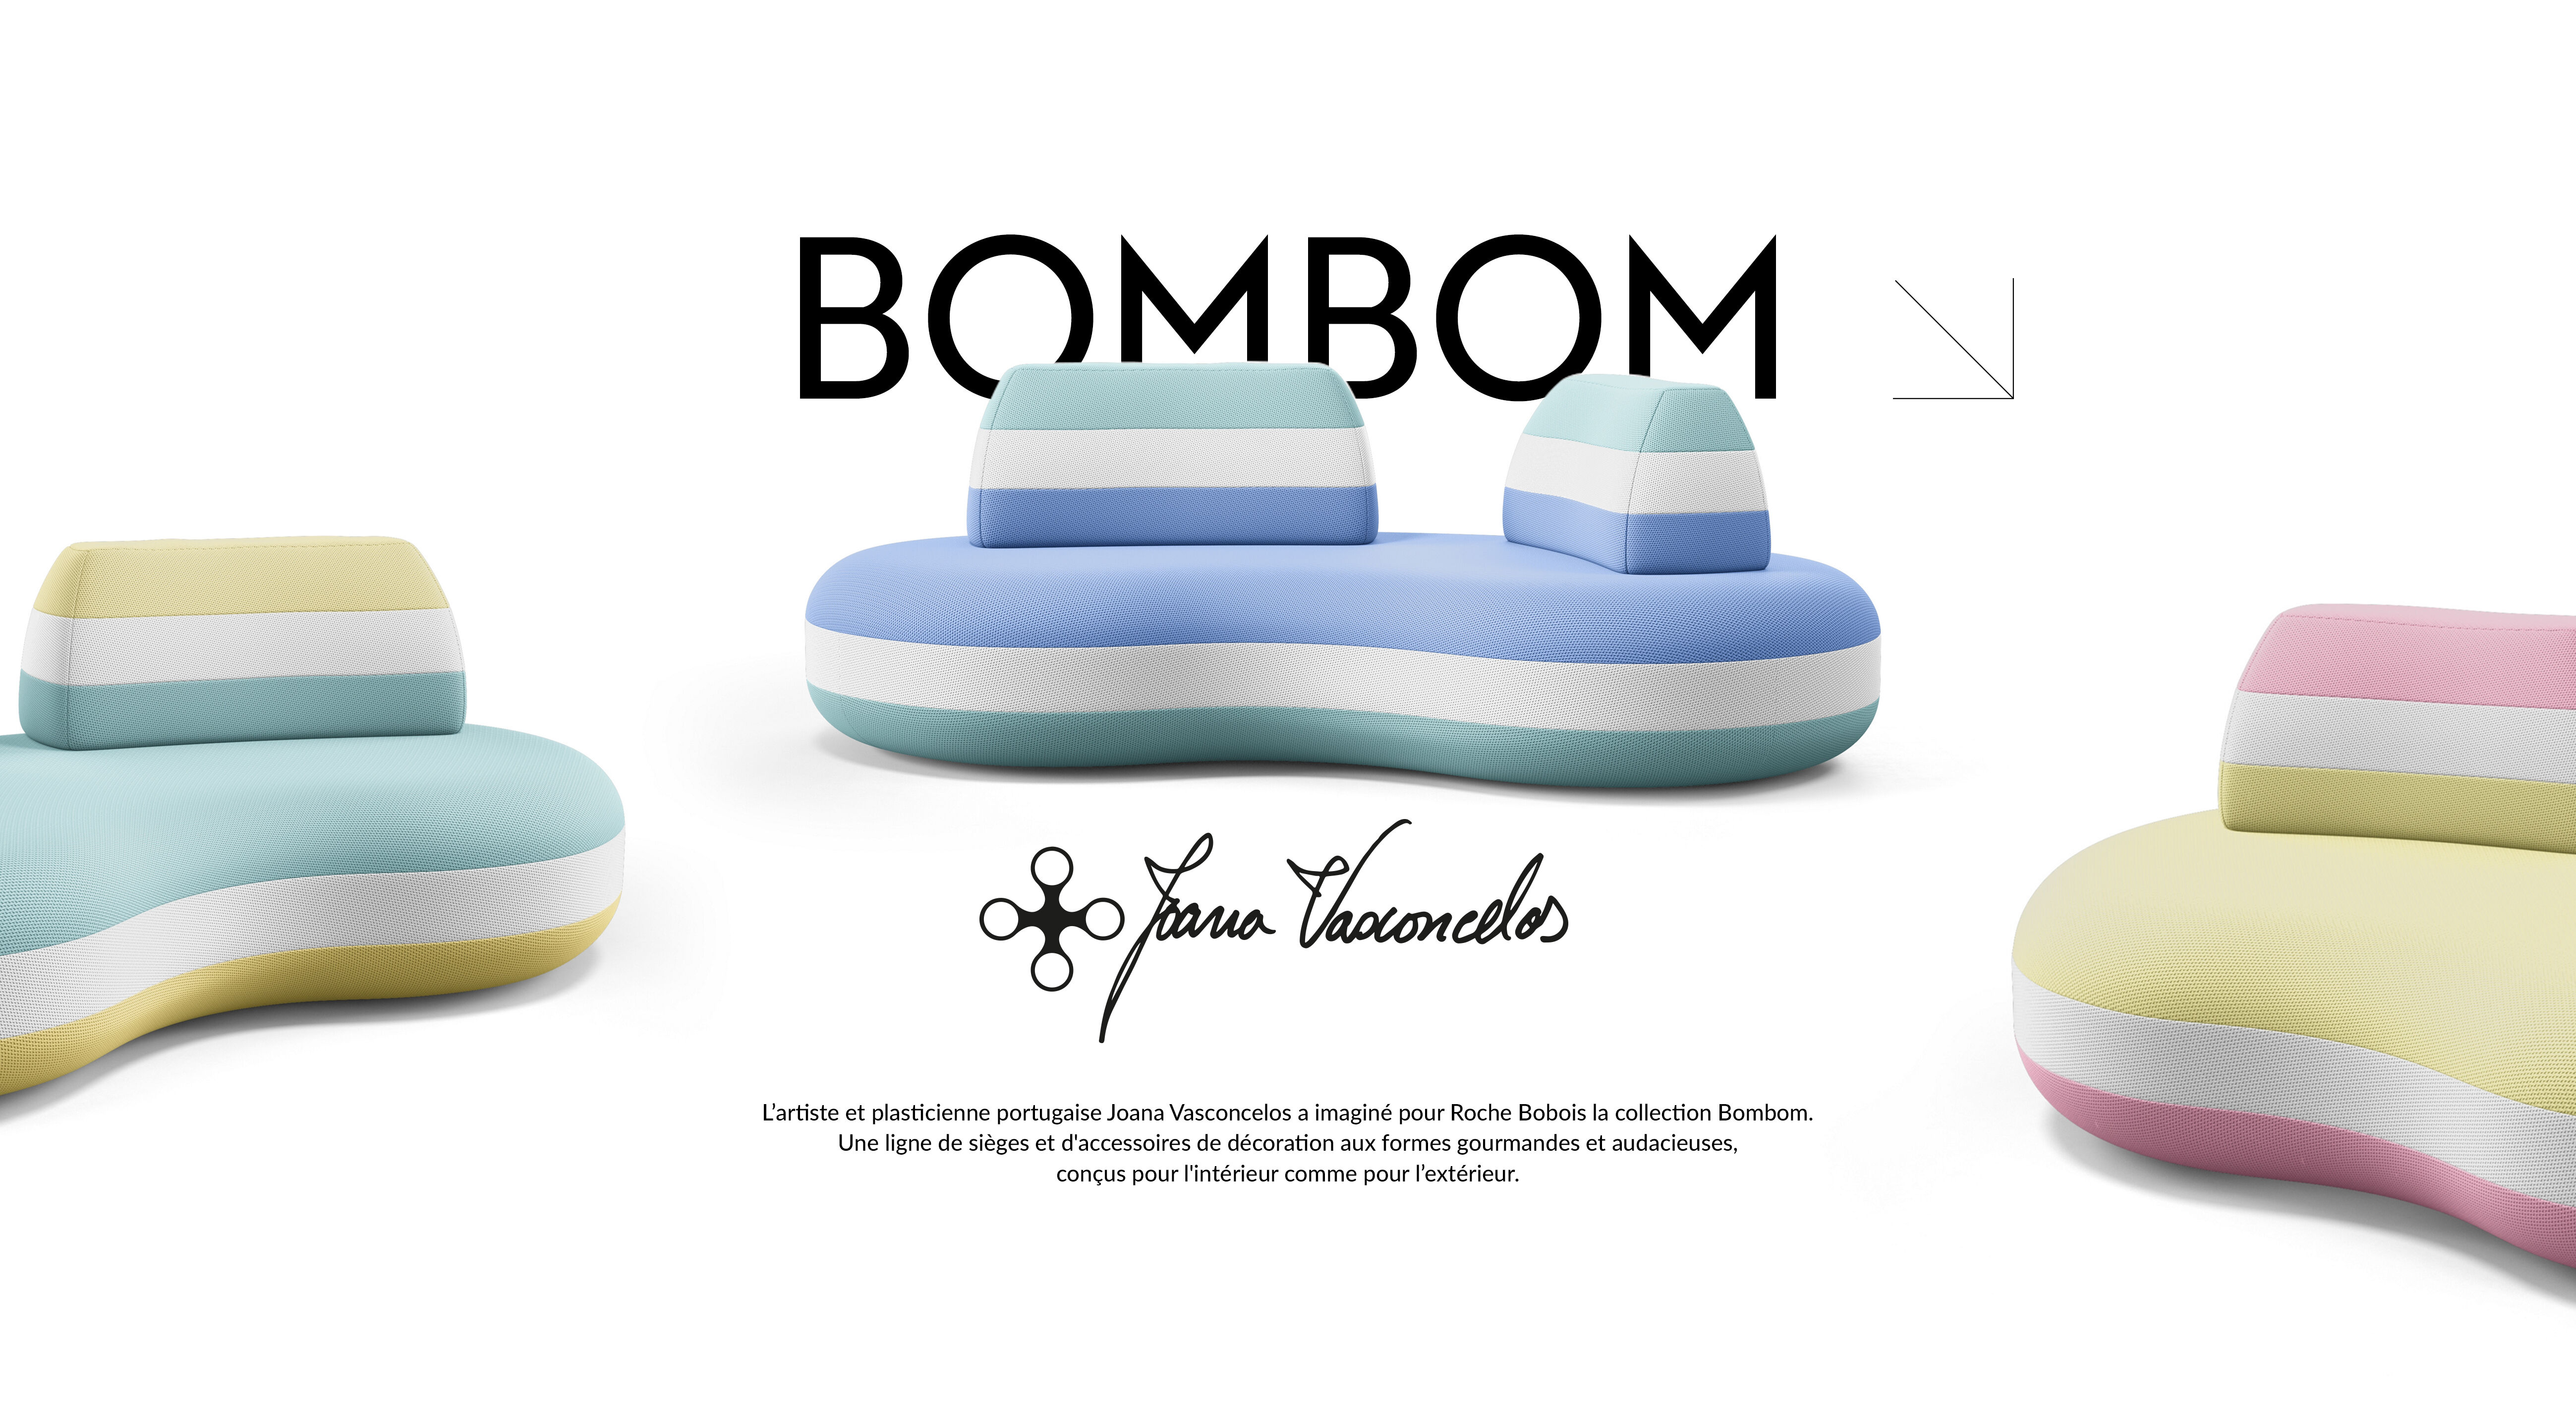 L’artiste et plasticienne portugaise Joana Vasconcelos a imaginé pour Roche Bobois la collection Bombom. Une ligne de sièges et d'accessoires de décoration aux formes gourmandes et audacieuses, conçus pour l'intérieur comme pour l’extérieur.